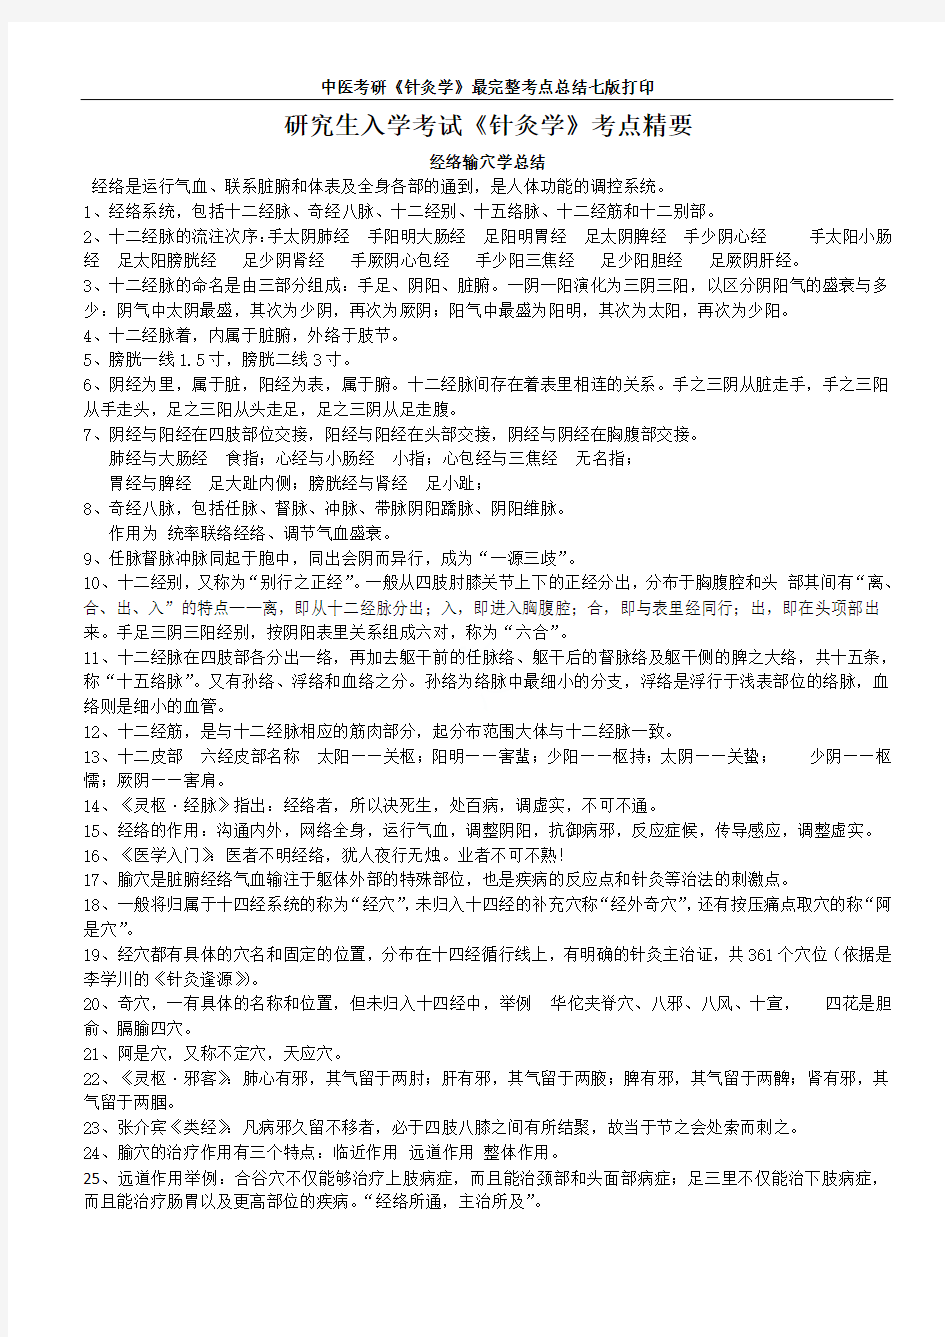 中医考研《针灸学》最完整考点总结七版打印